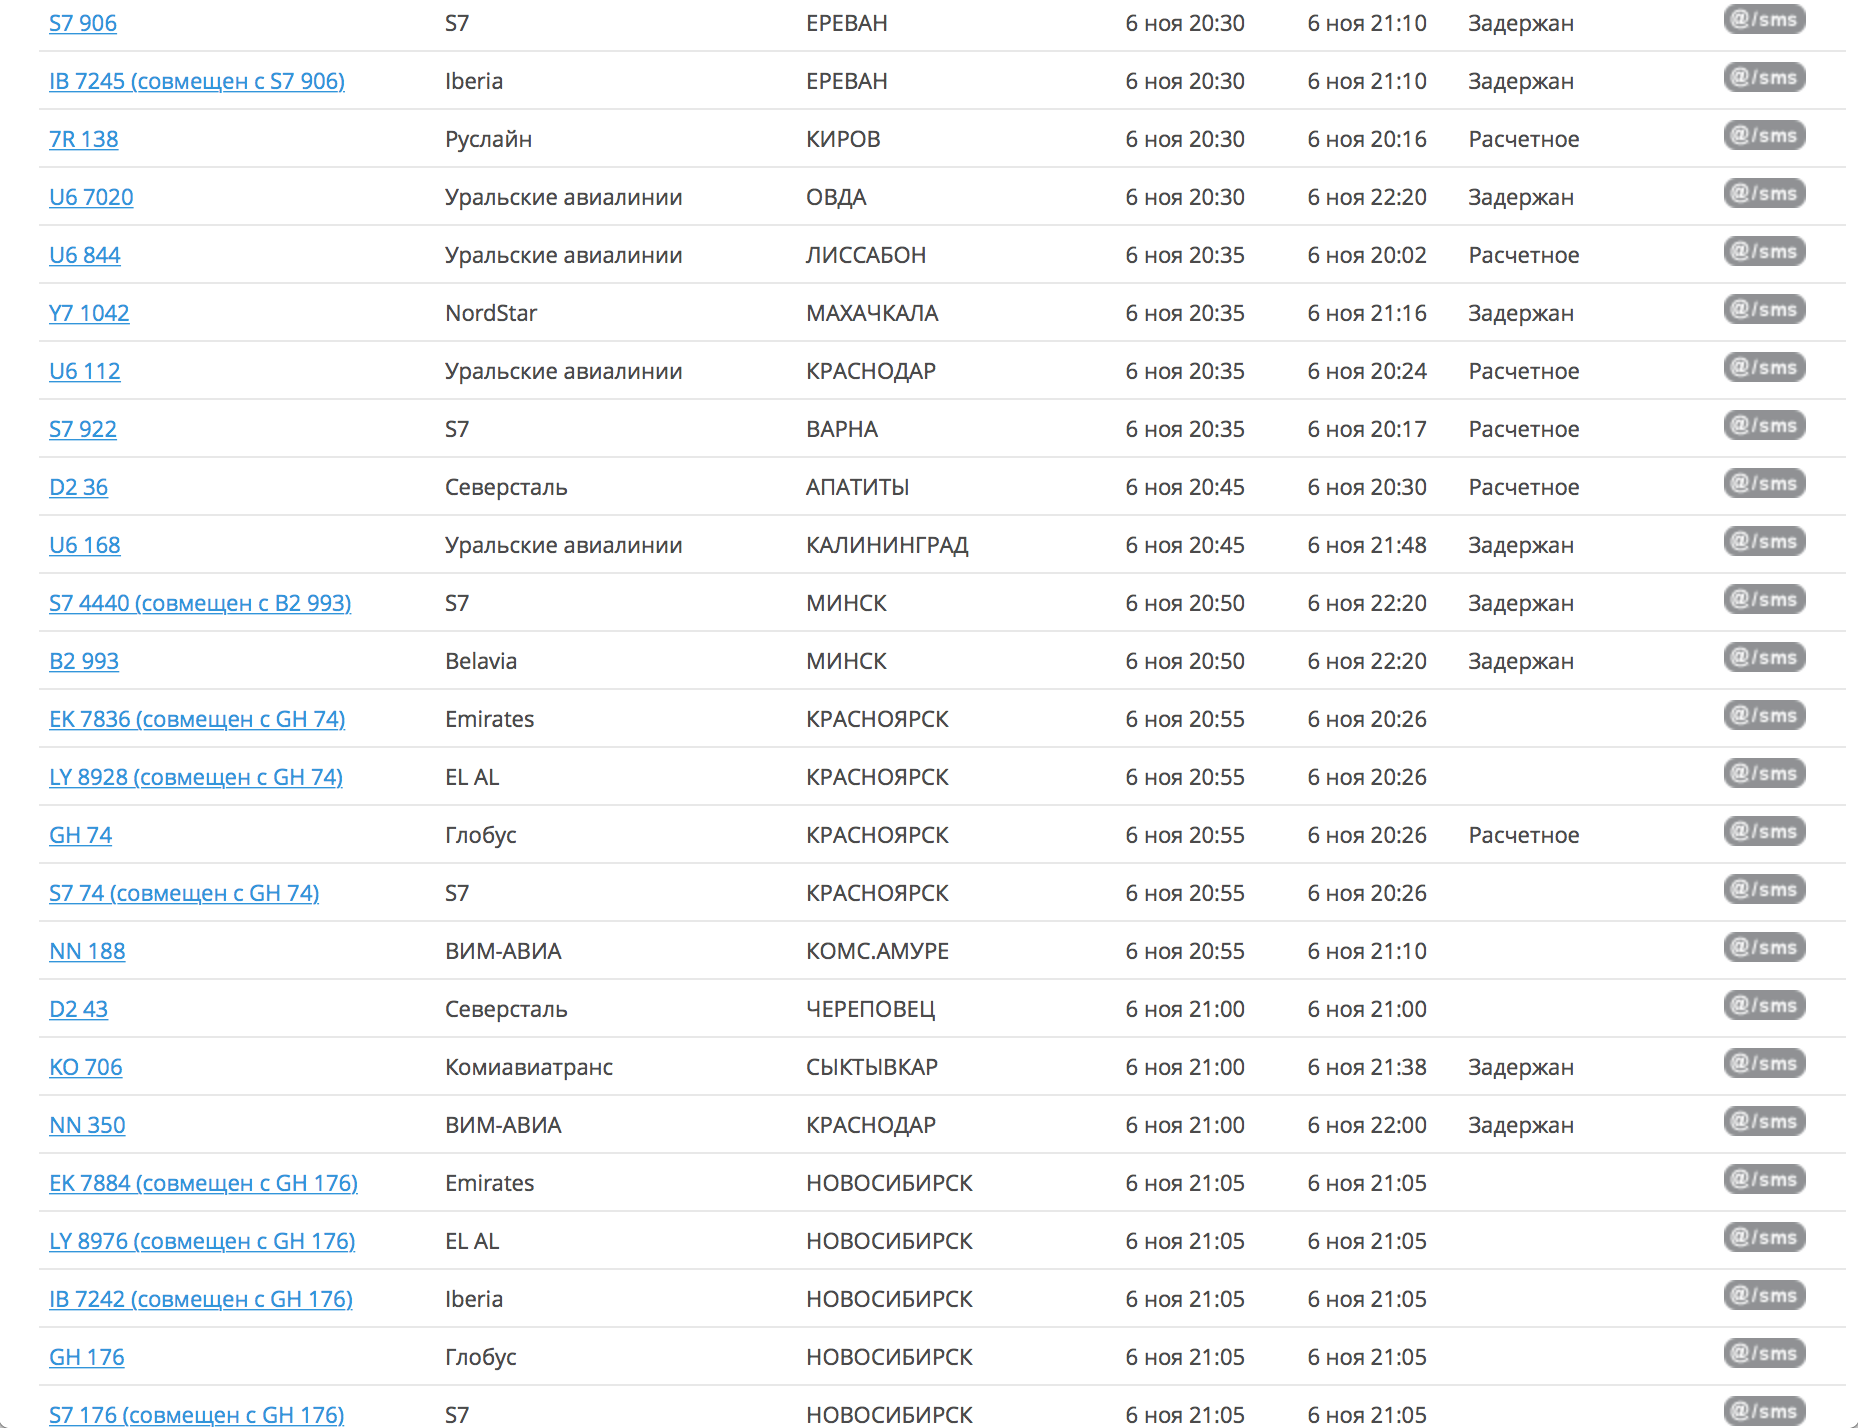 Онлайн-табло аэропорта «Домодедово». Видно, что рейс в Сыктывкар задержан на 40 минут. А еще на сайте аэропорта можно бесплатно подписаться на смс-уведомления о статусе рейса